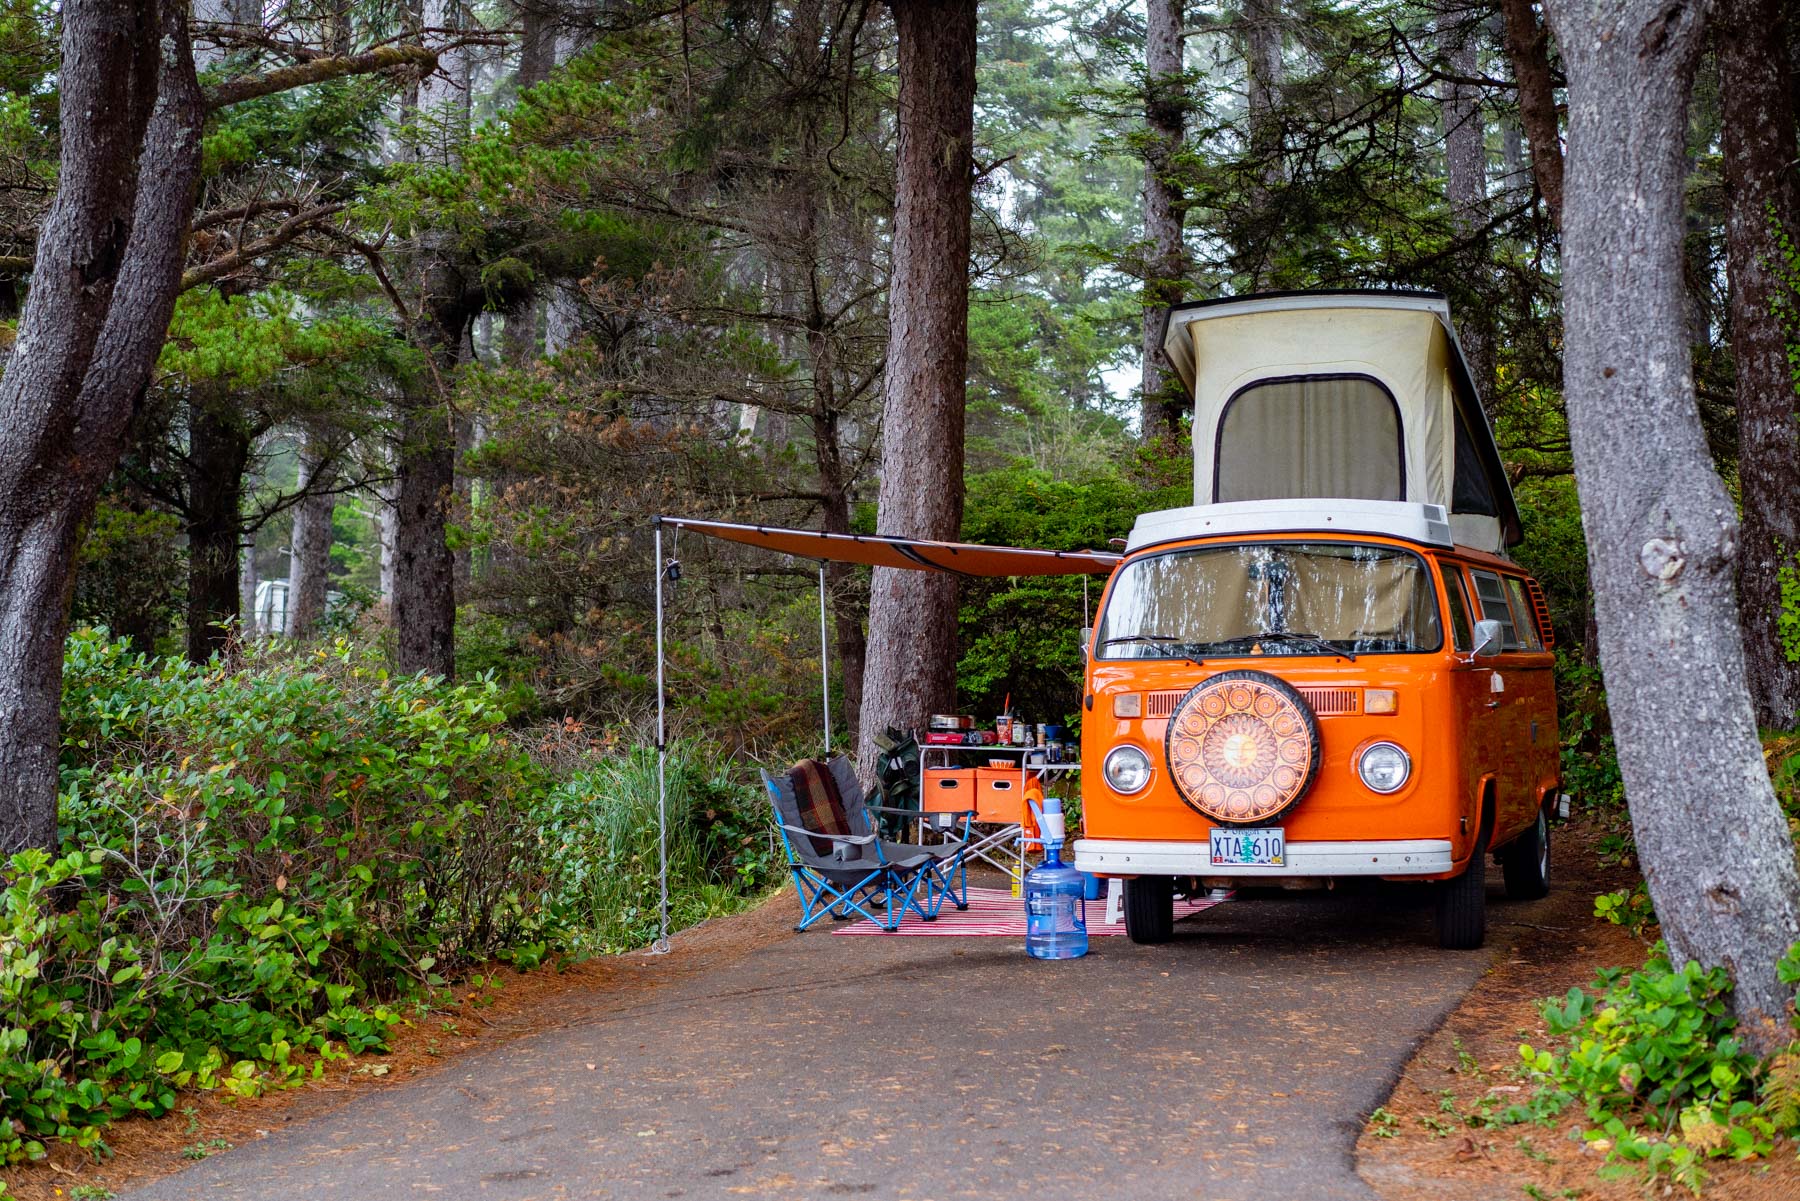 Camping at the Oregon Coast